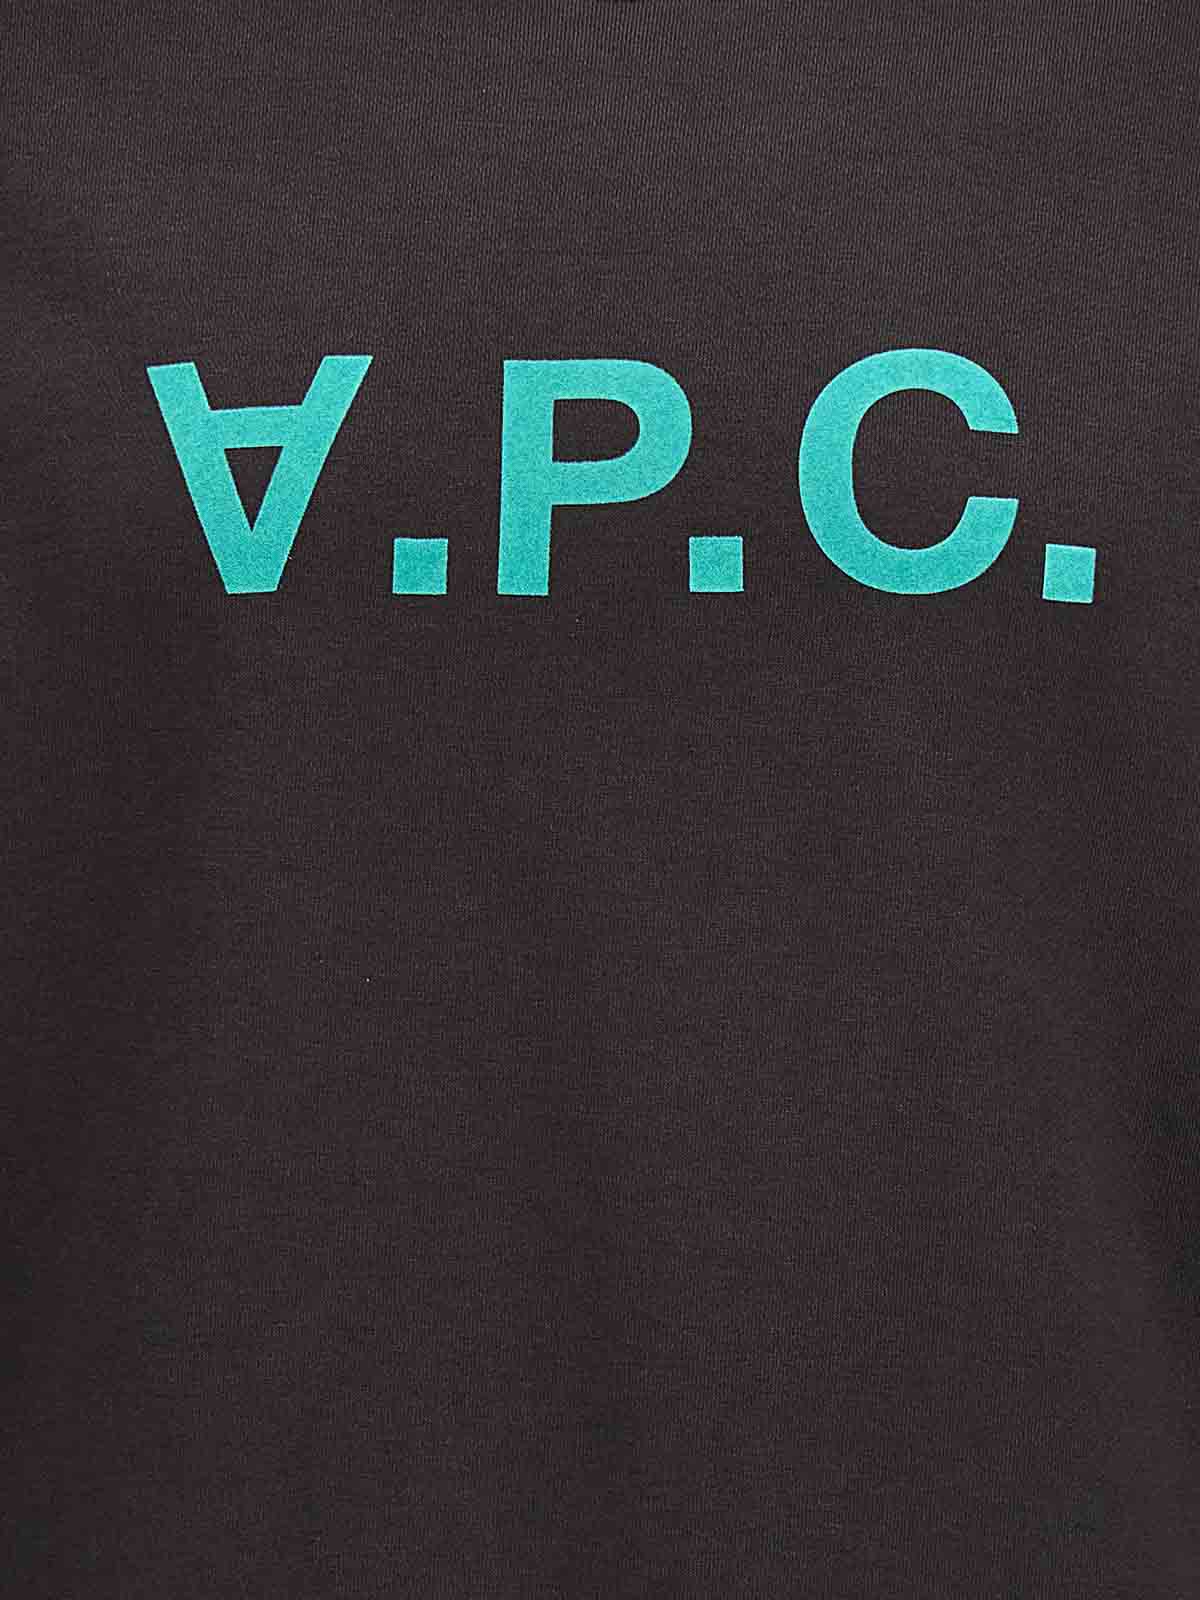 Shop Apc Vpc Sweatshirt In Gris